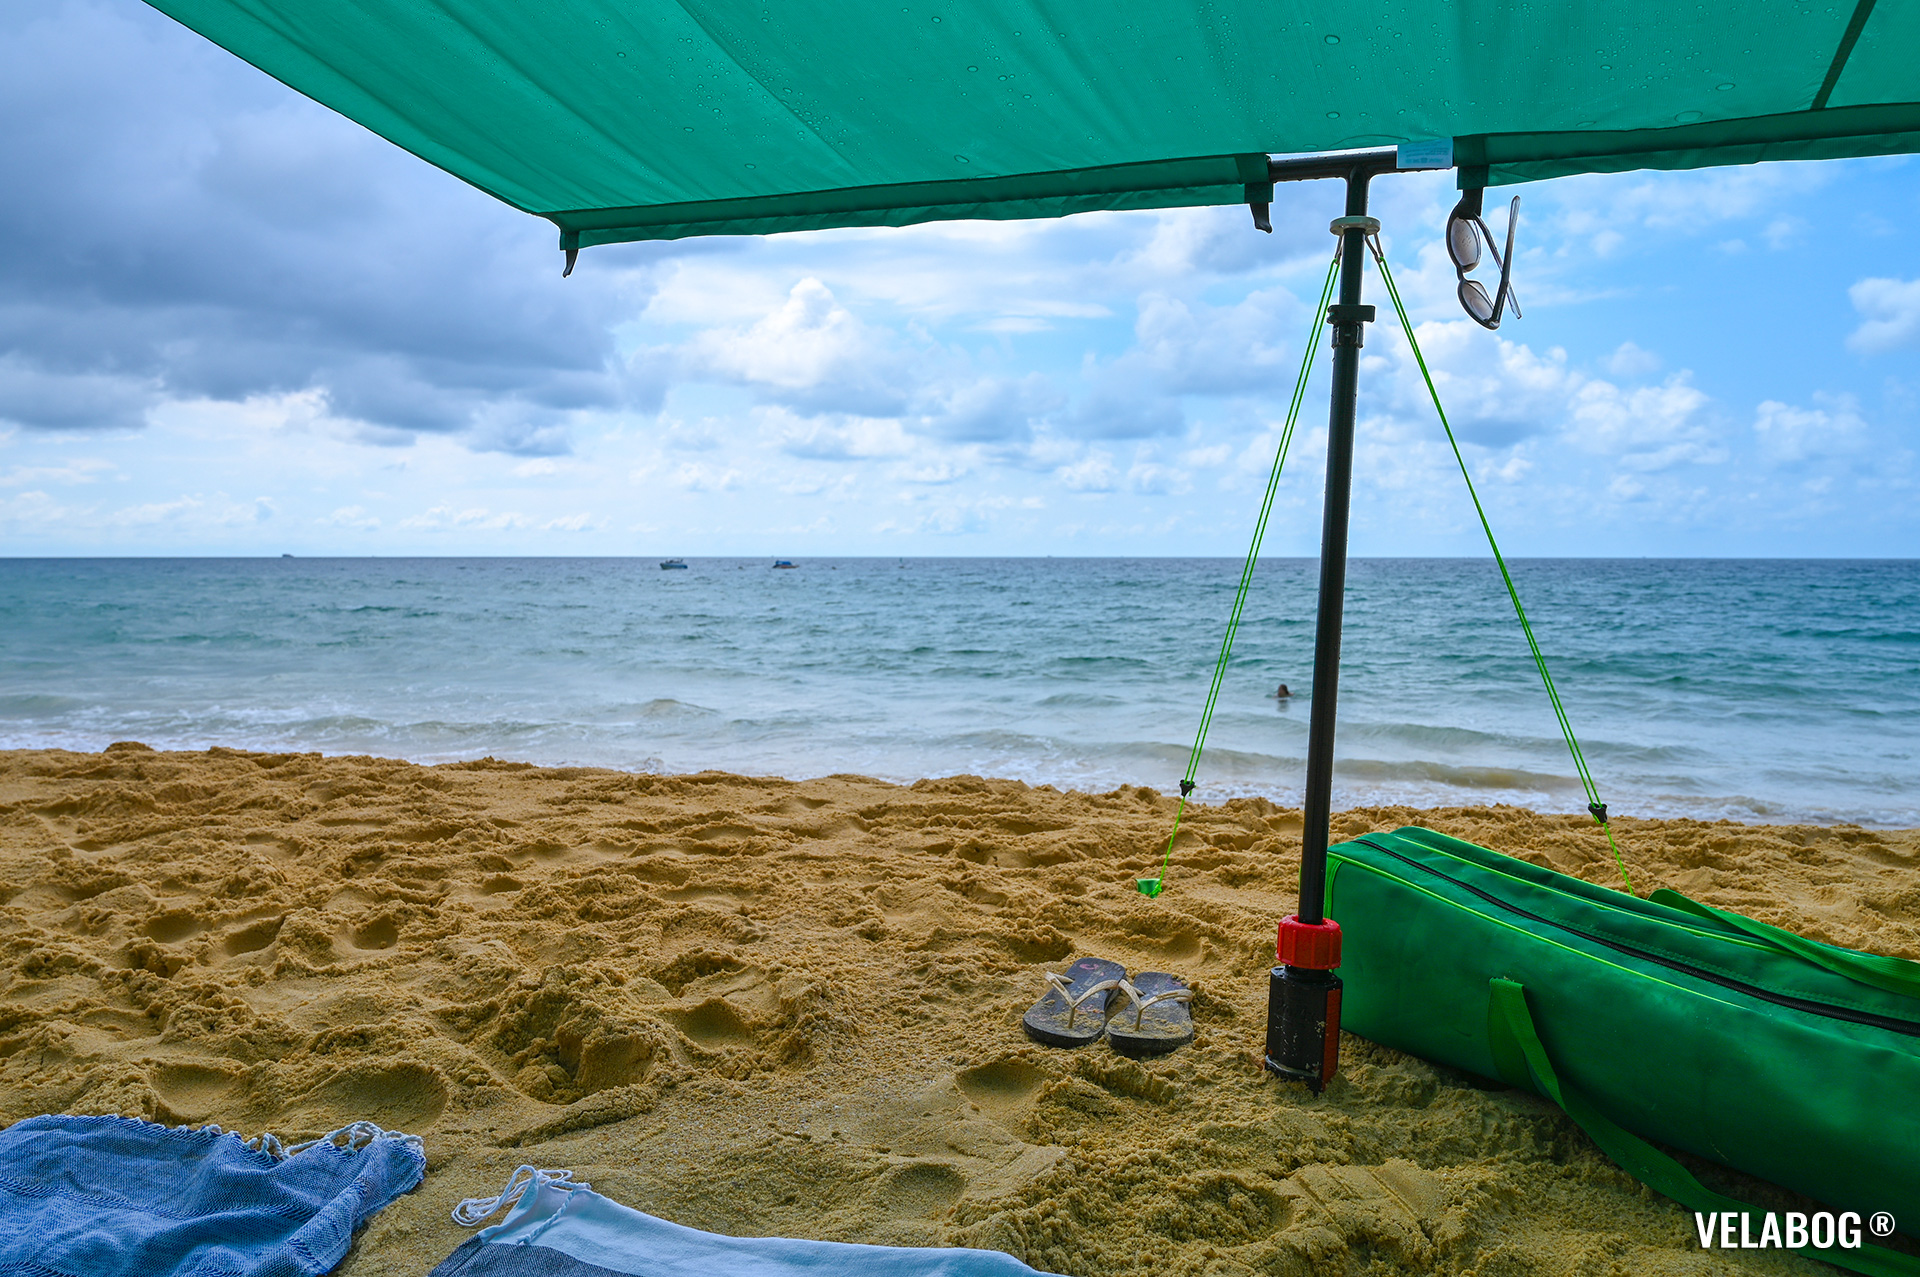 Tenda da spiaggia Velabog Breeze, verde. Ottima protezione dal sole sulla spiaggia anche in caso di breve acquazzone.